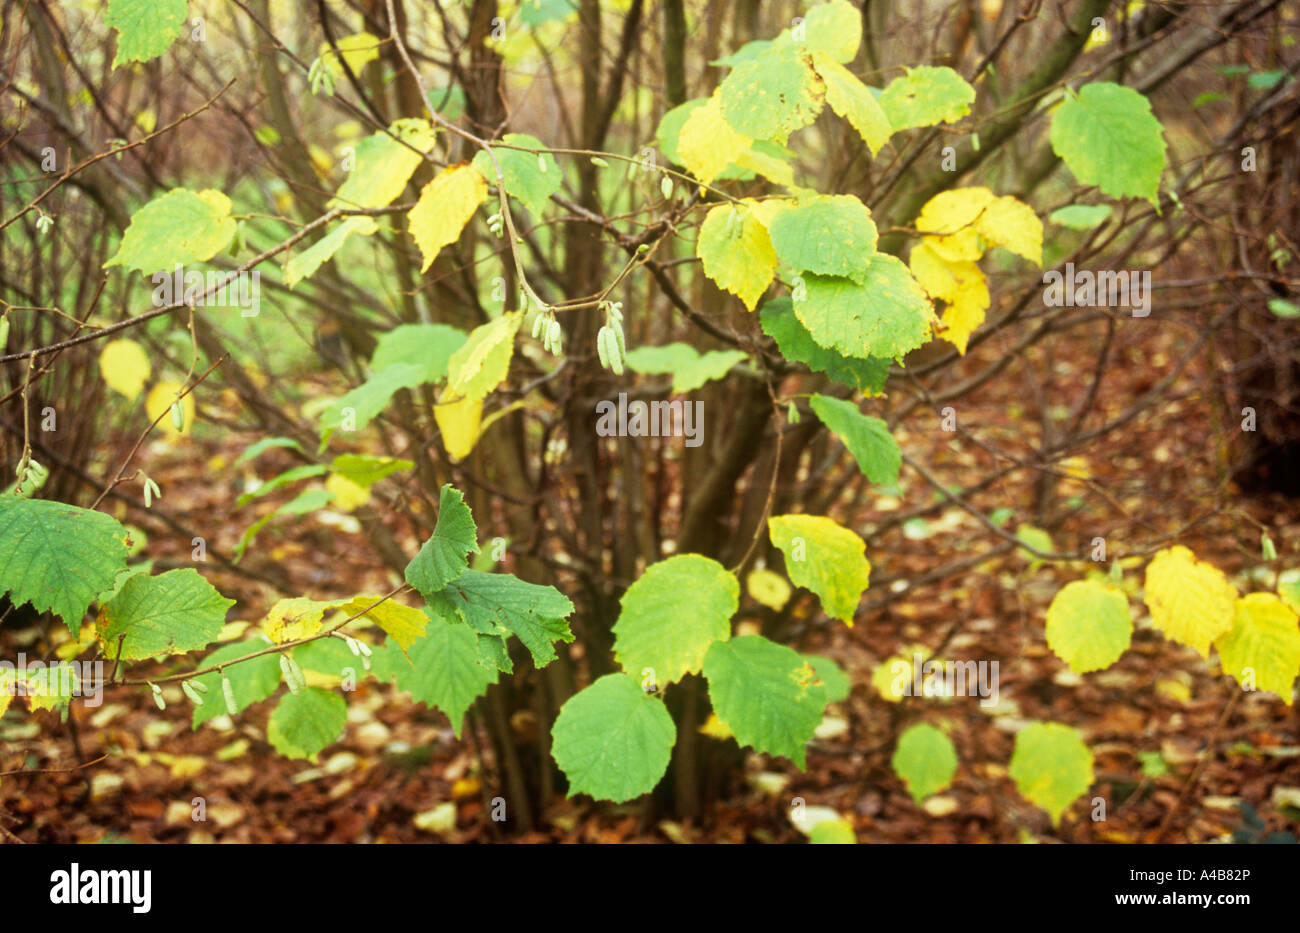 Les taillis ou hazel Corylus avellana arbuste avec des feuilles vertes et jaunes d'automne jeunes chatons et des tapis de feuilles marron Banque D'Images